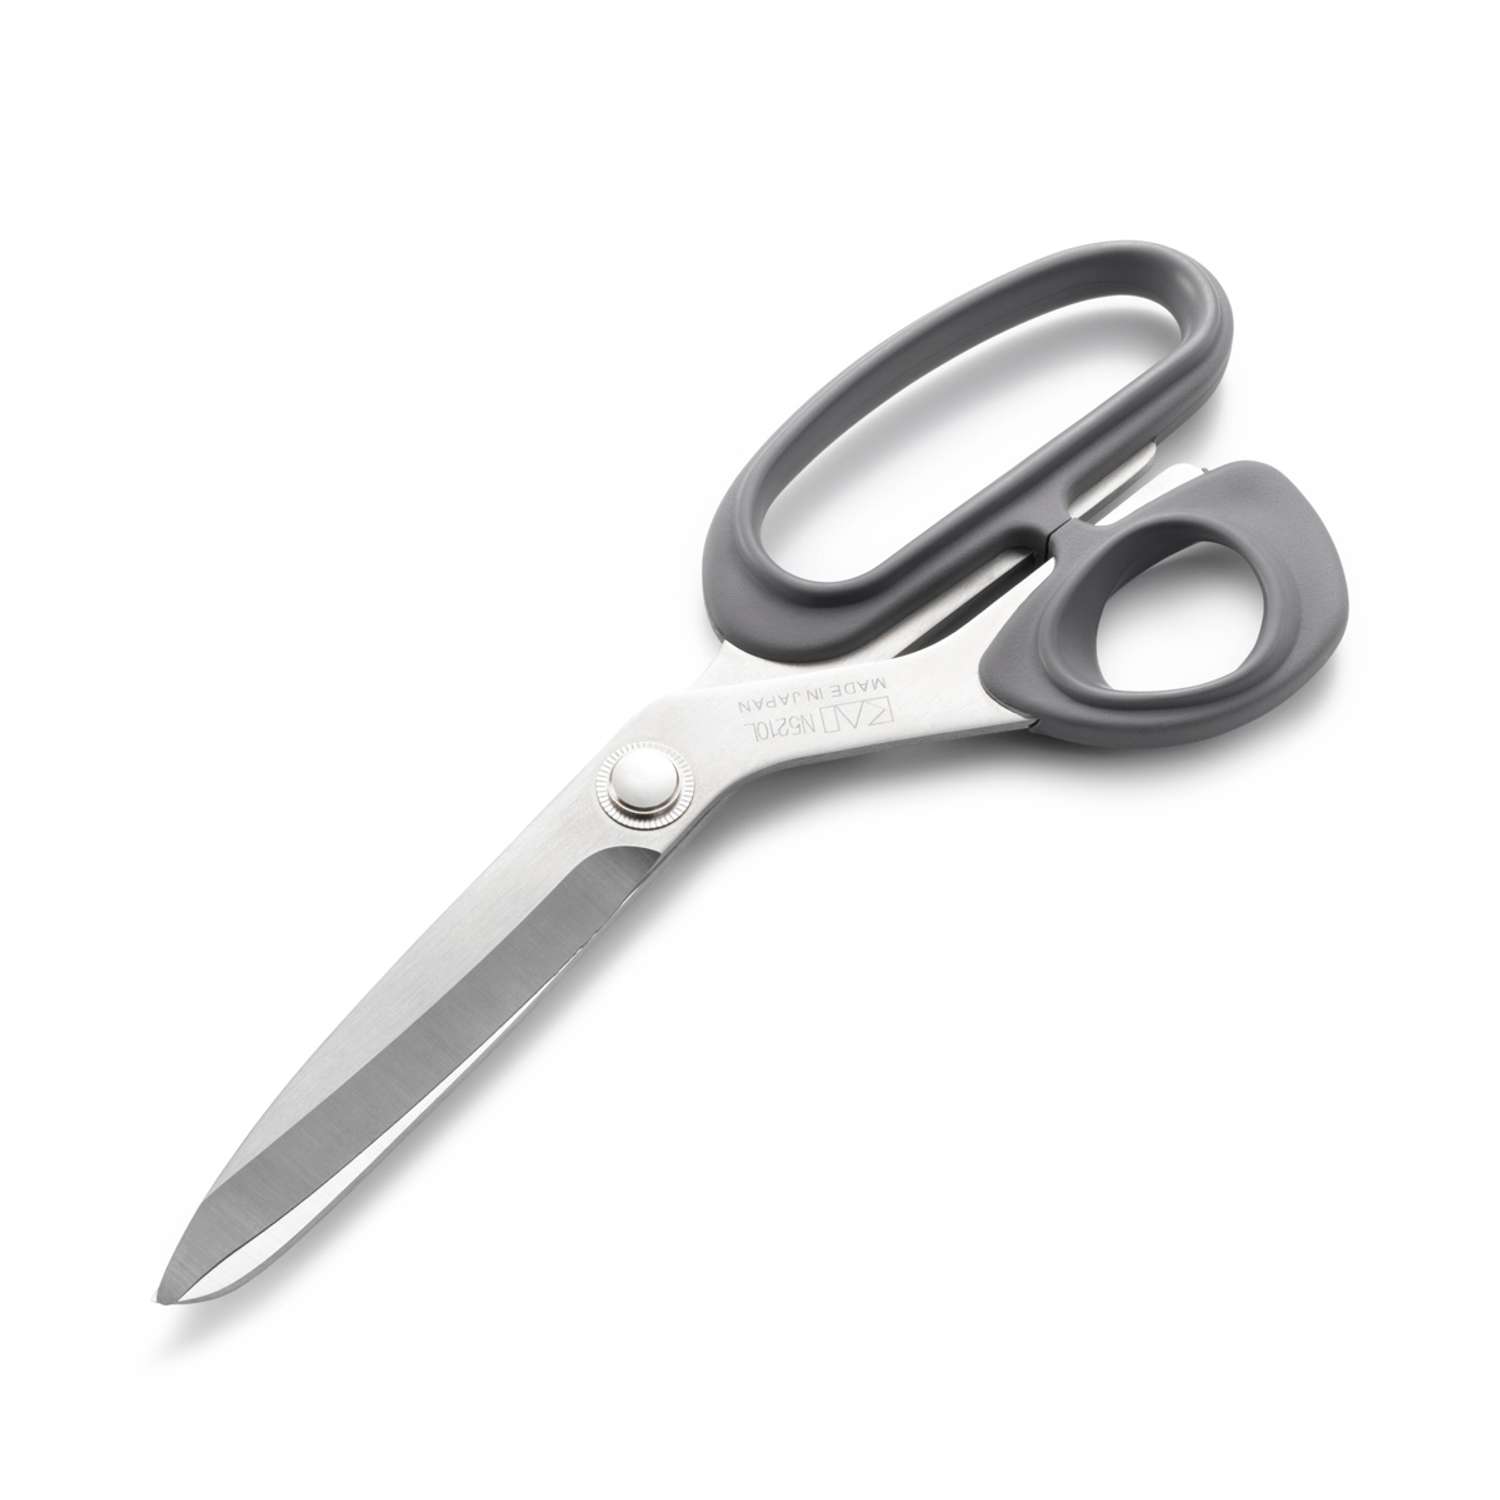 Ножницы Prym для левшей портновские со стальными лезвиями и мягкими прорезиненными ручками 21 см 610513 - фото 4